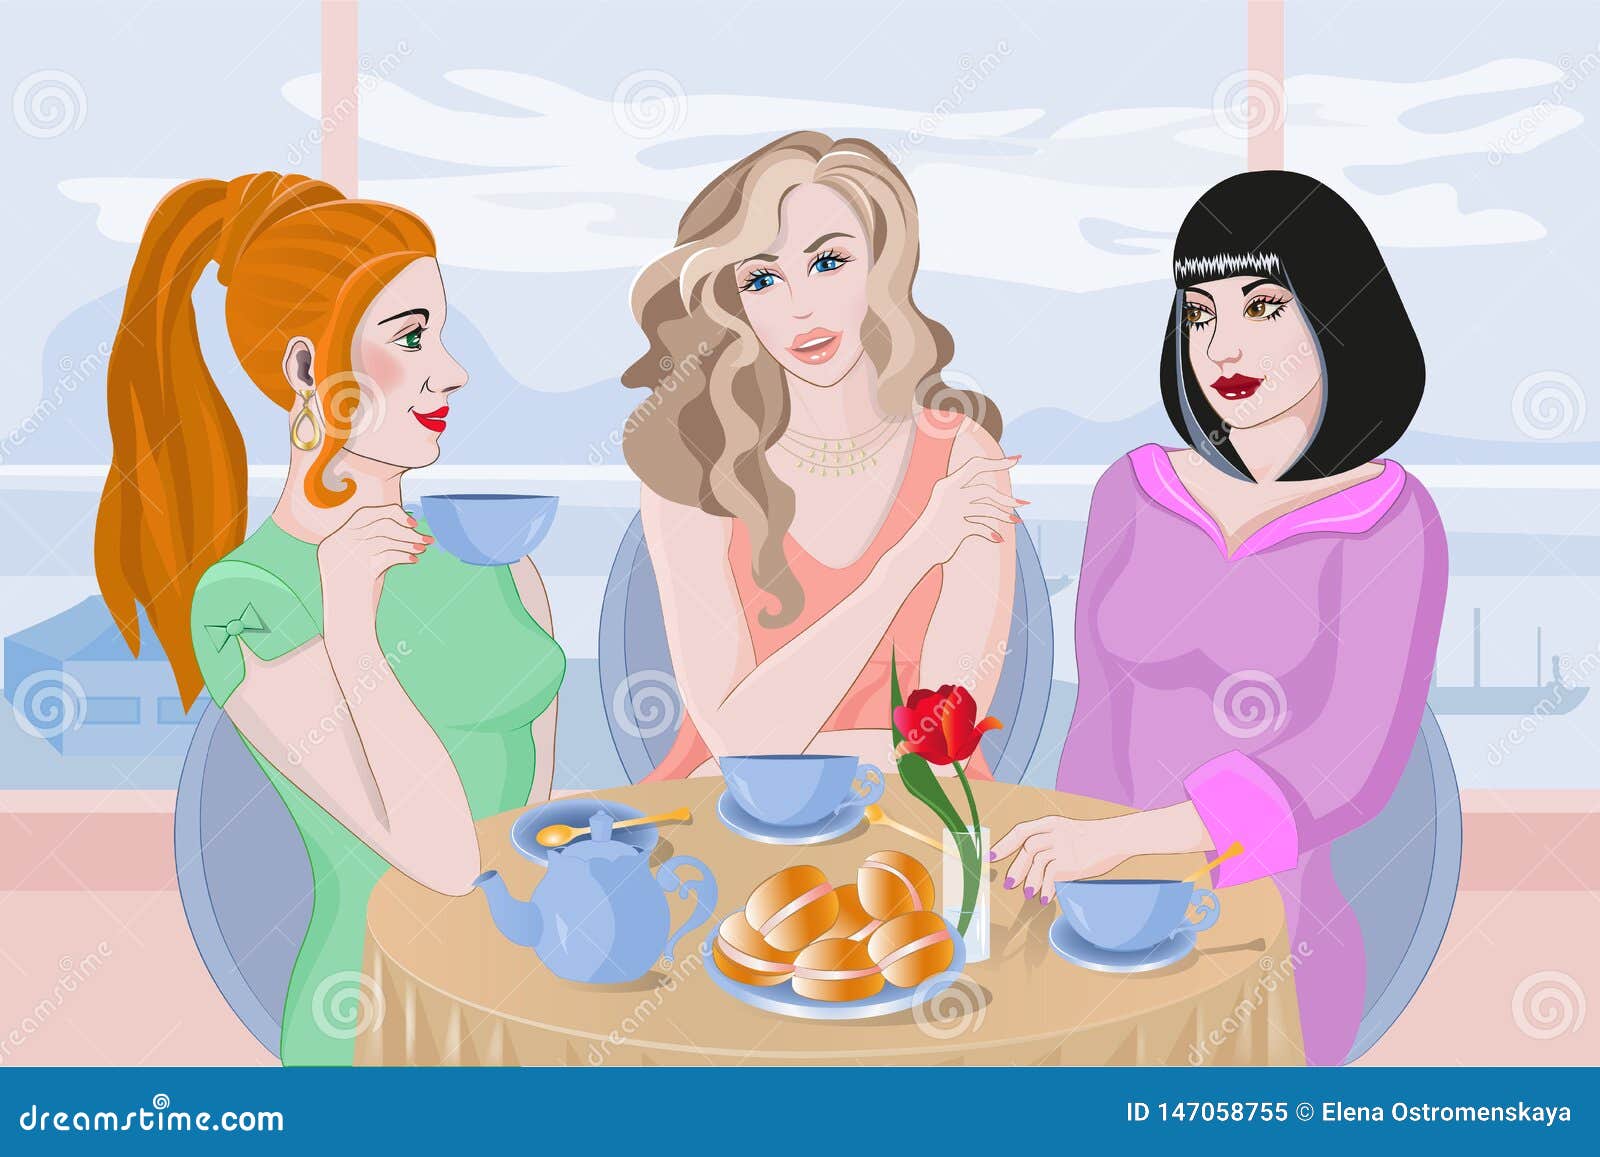 Подруги сидели и пили. Чаепитие с подружками. Три девушки за столом. Три подружки в кафе. Иллюстрации подружки в кафе.